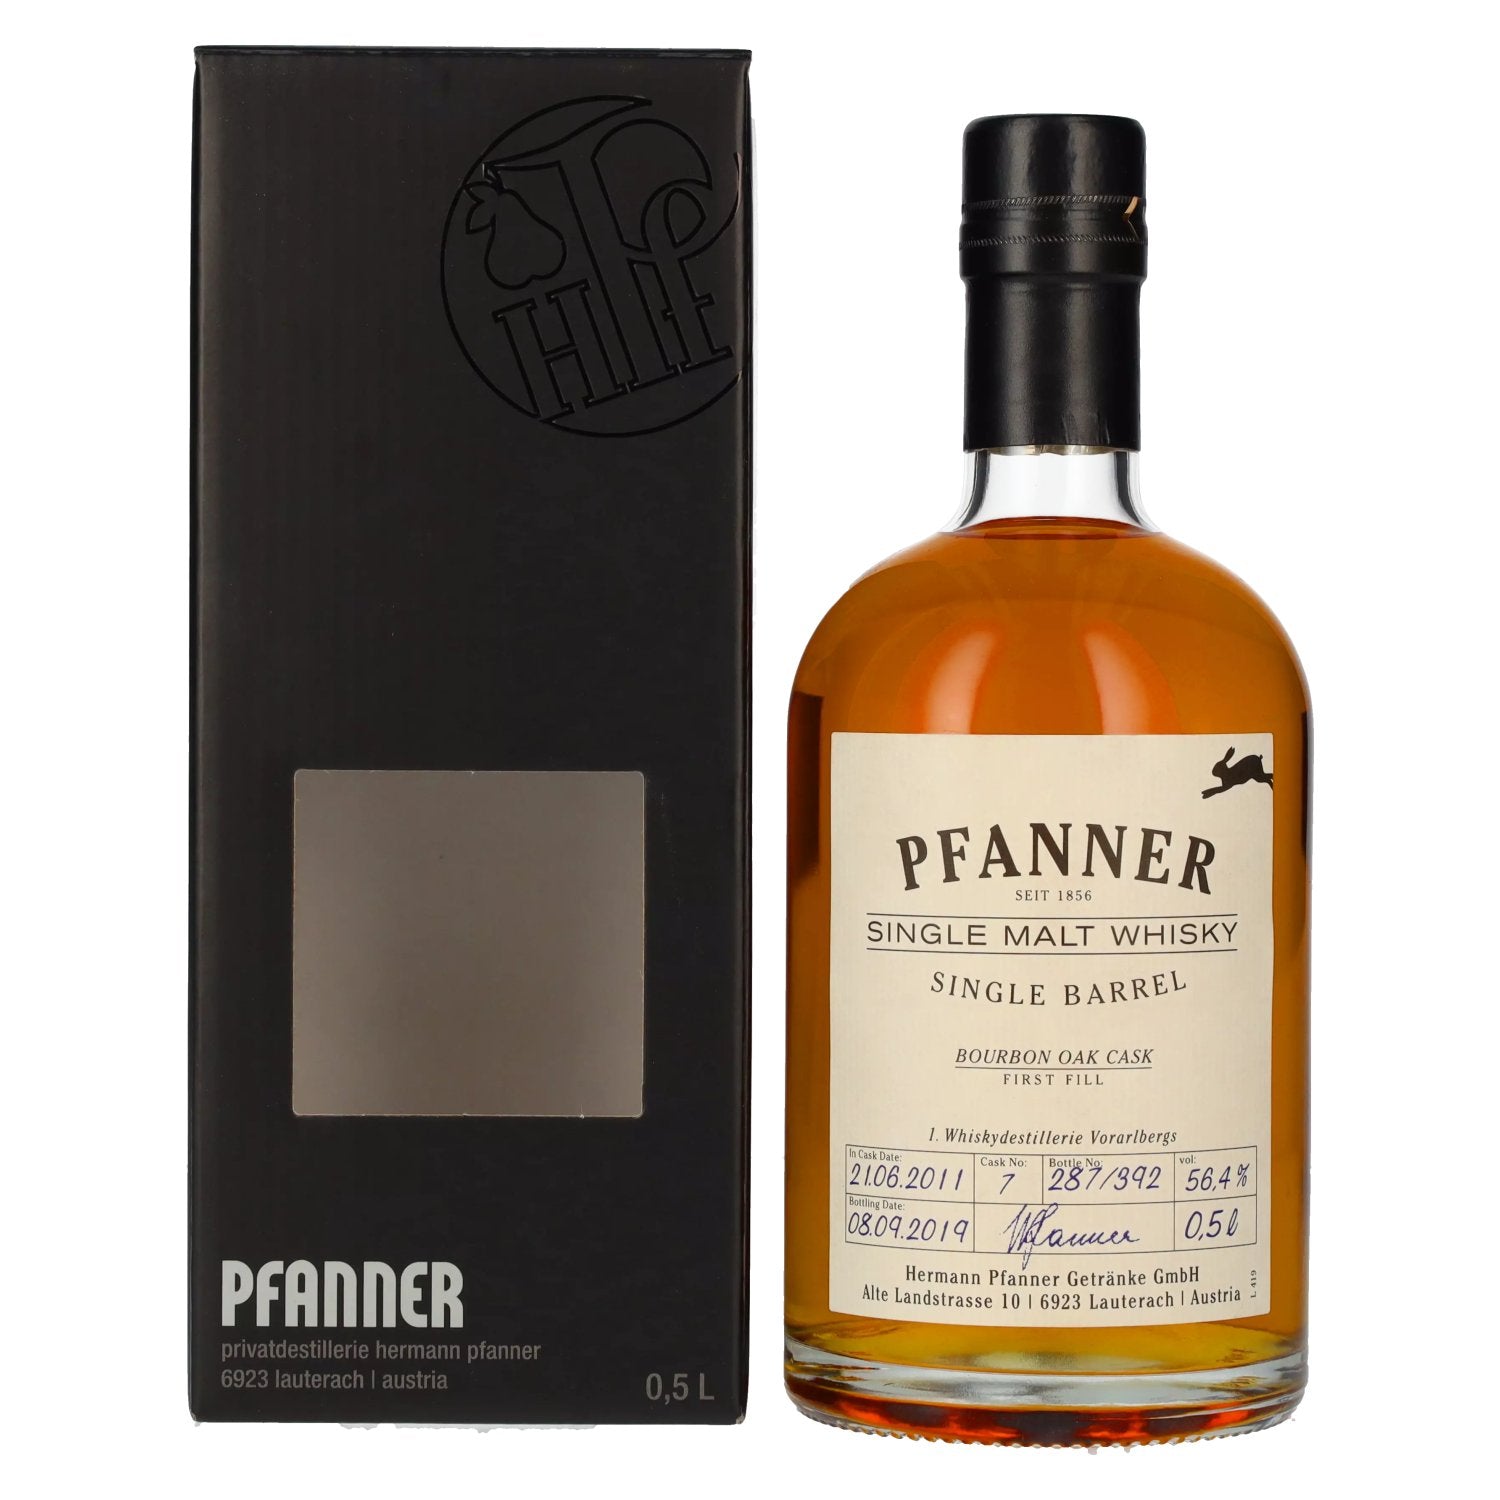 Pfanner Bourbon Oak Cask Single Malt Whisky 56,4% Vol. 0,5l in Giftbox